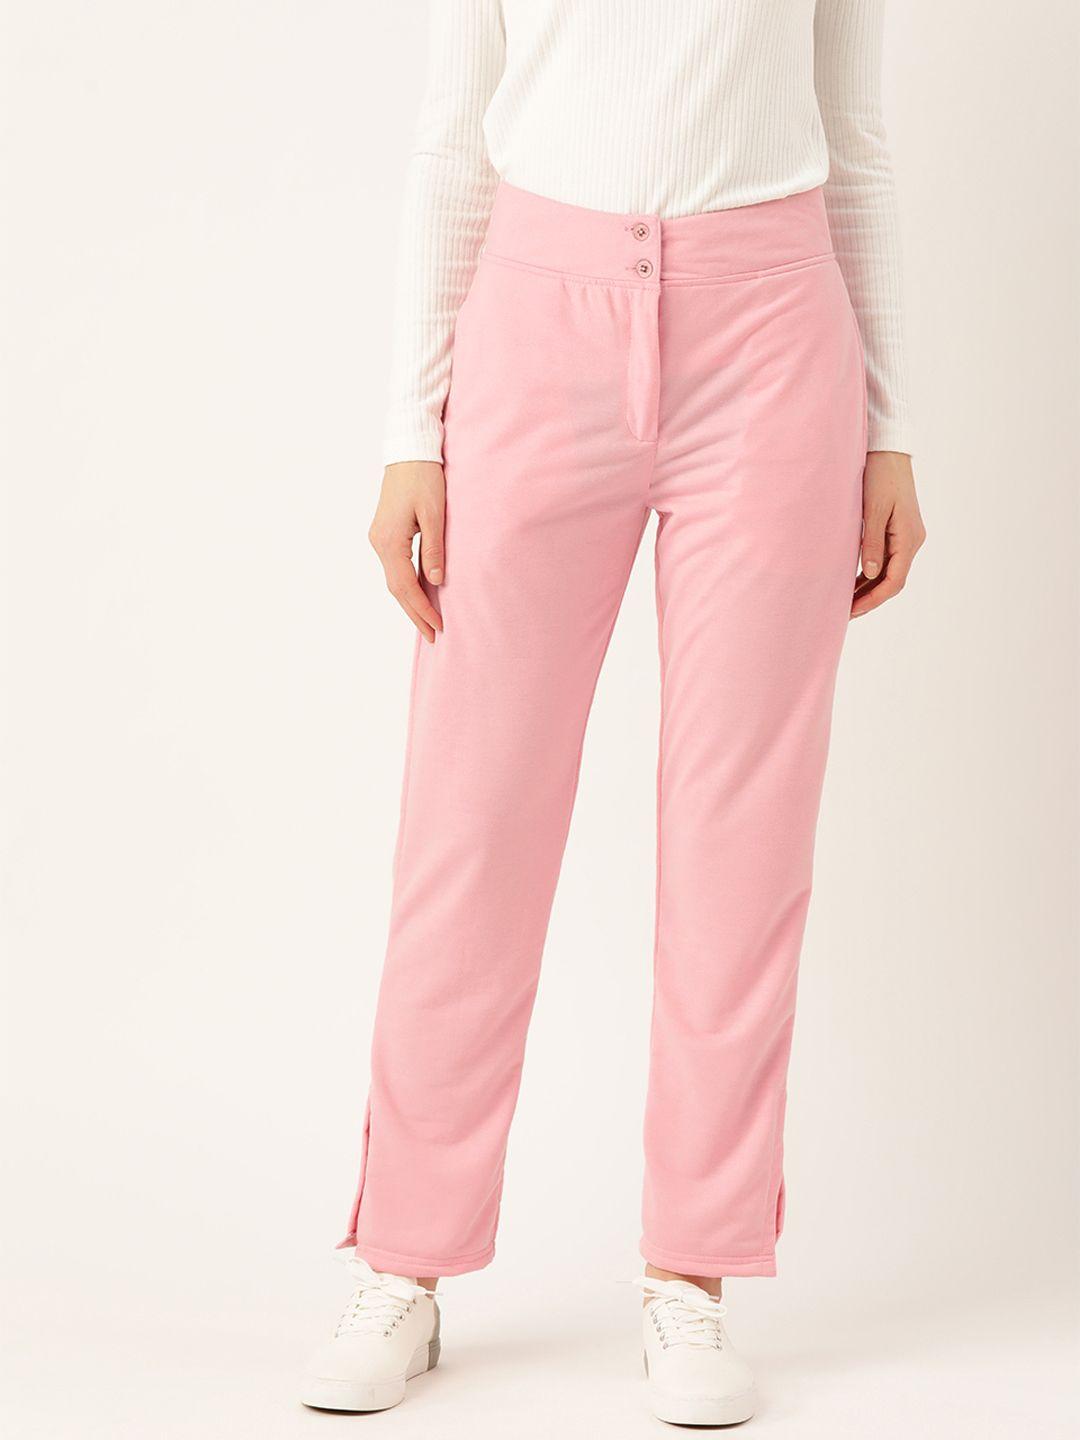 alsace lorraine paris women pink cotton regular fit solid stretchable trousers